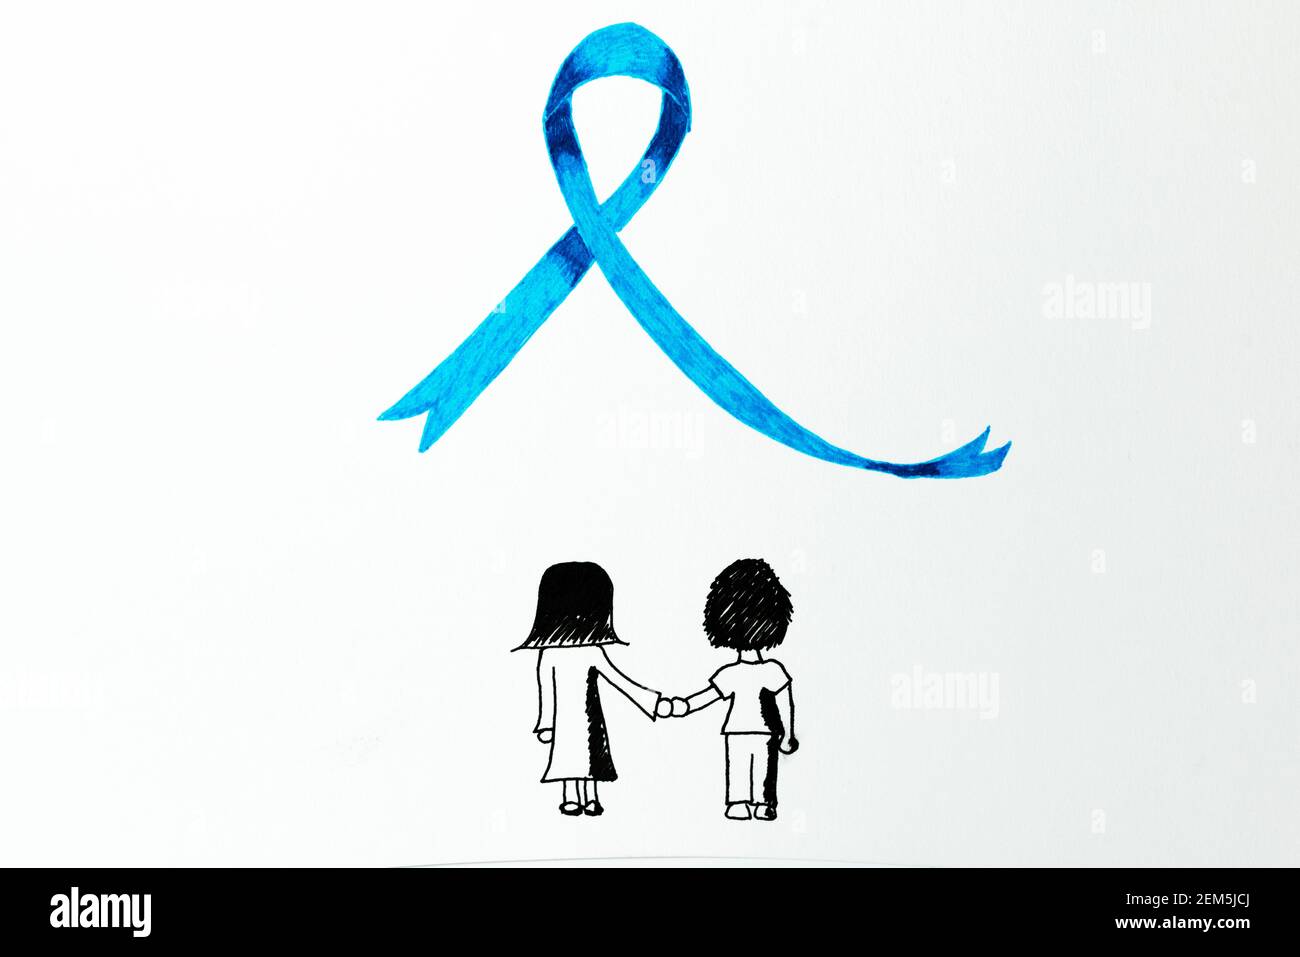 Zeichnen mit zwei Kindern vor blauem Band mit Bleistiften - nationaler Monat zur Verhinderung von Kindesmissbrauch Stockfoto